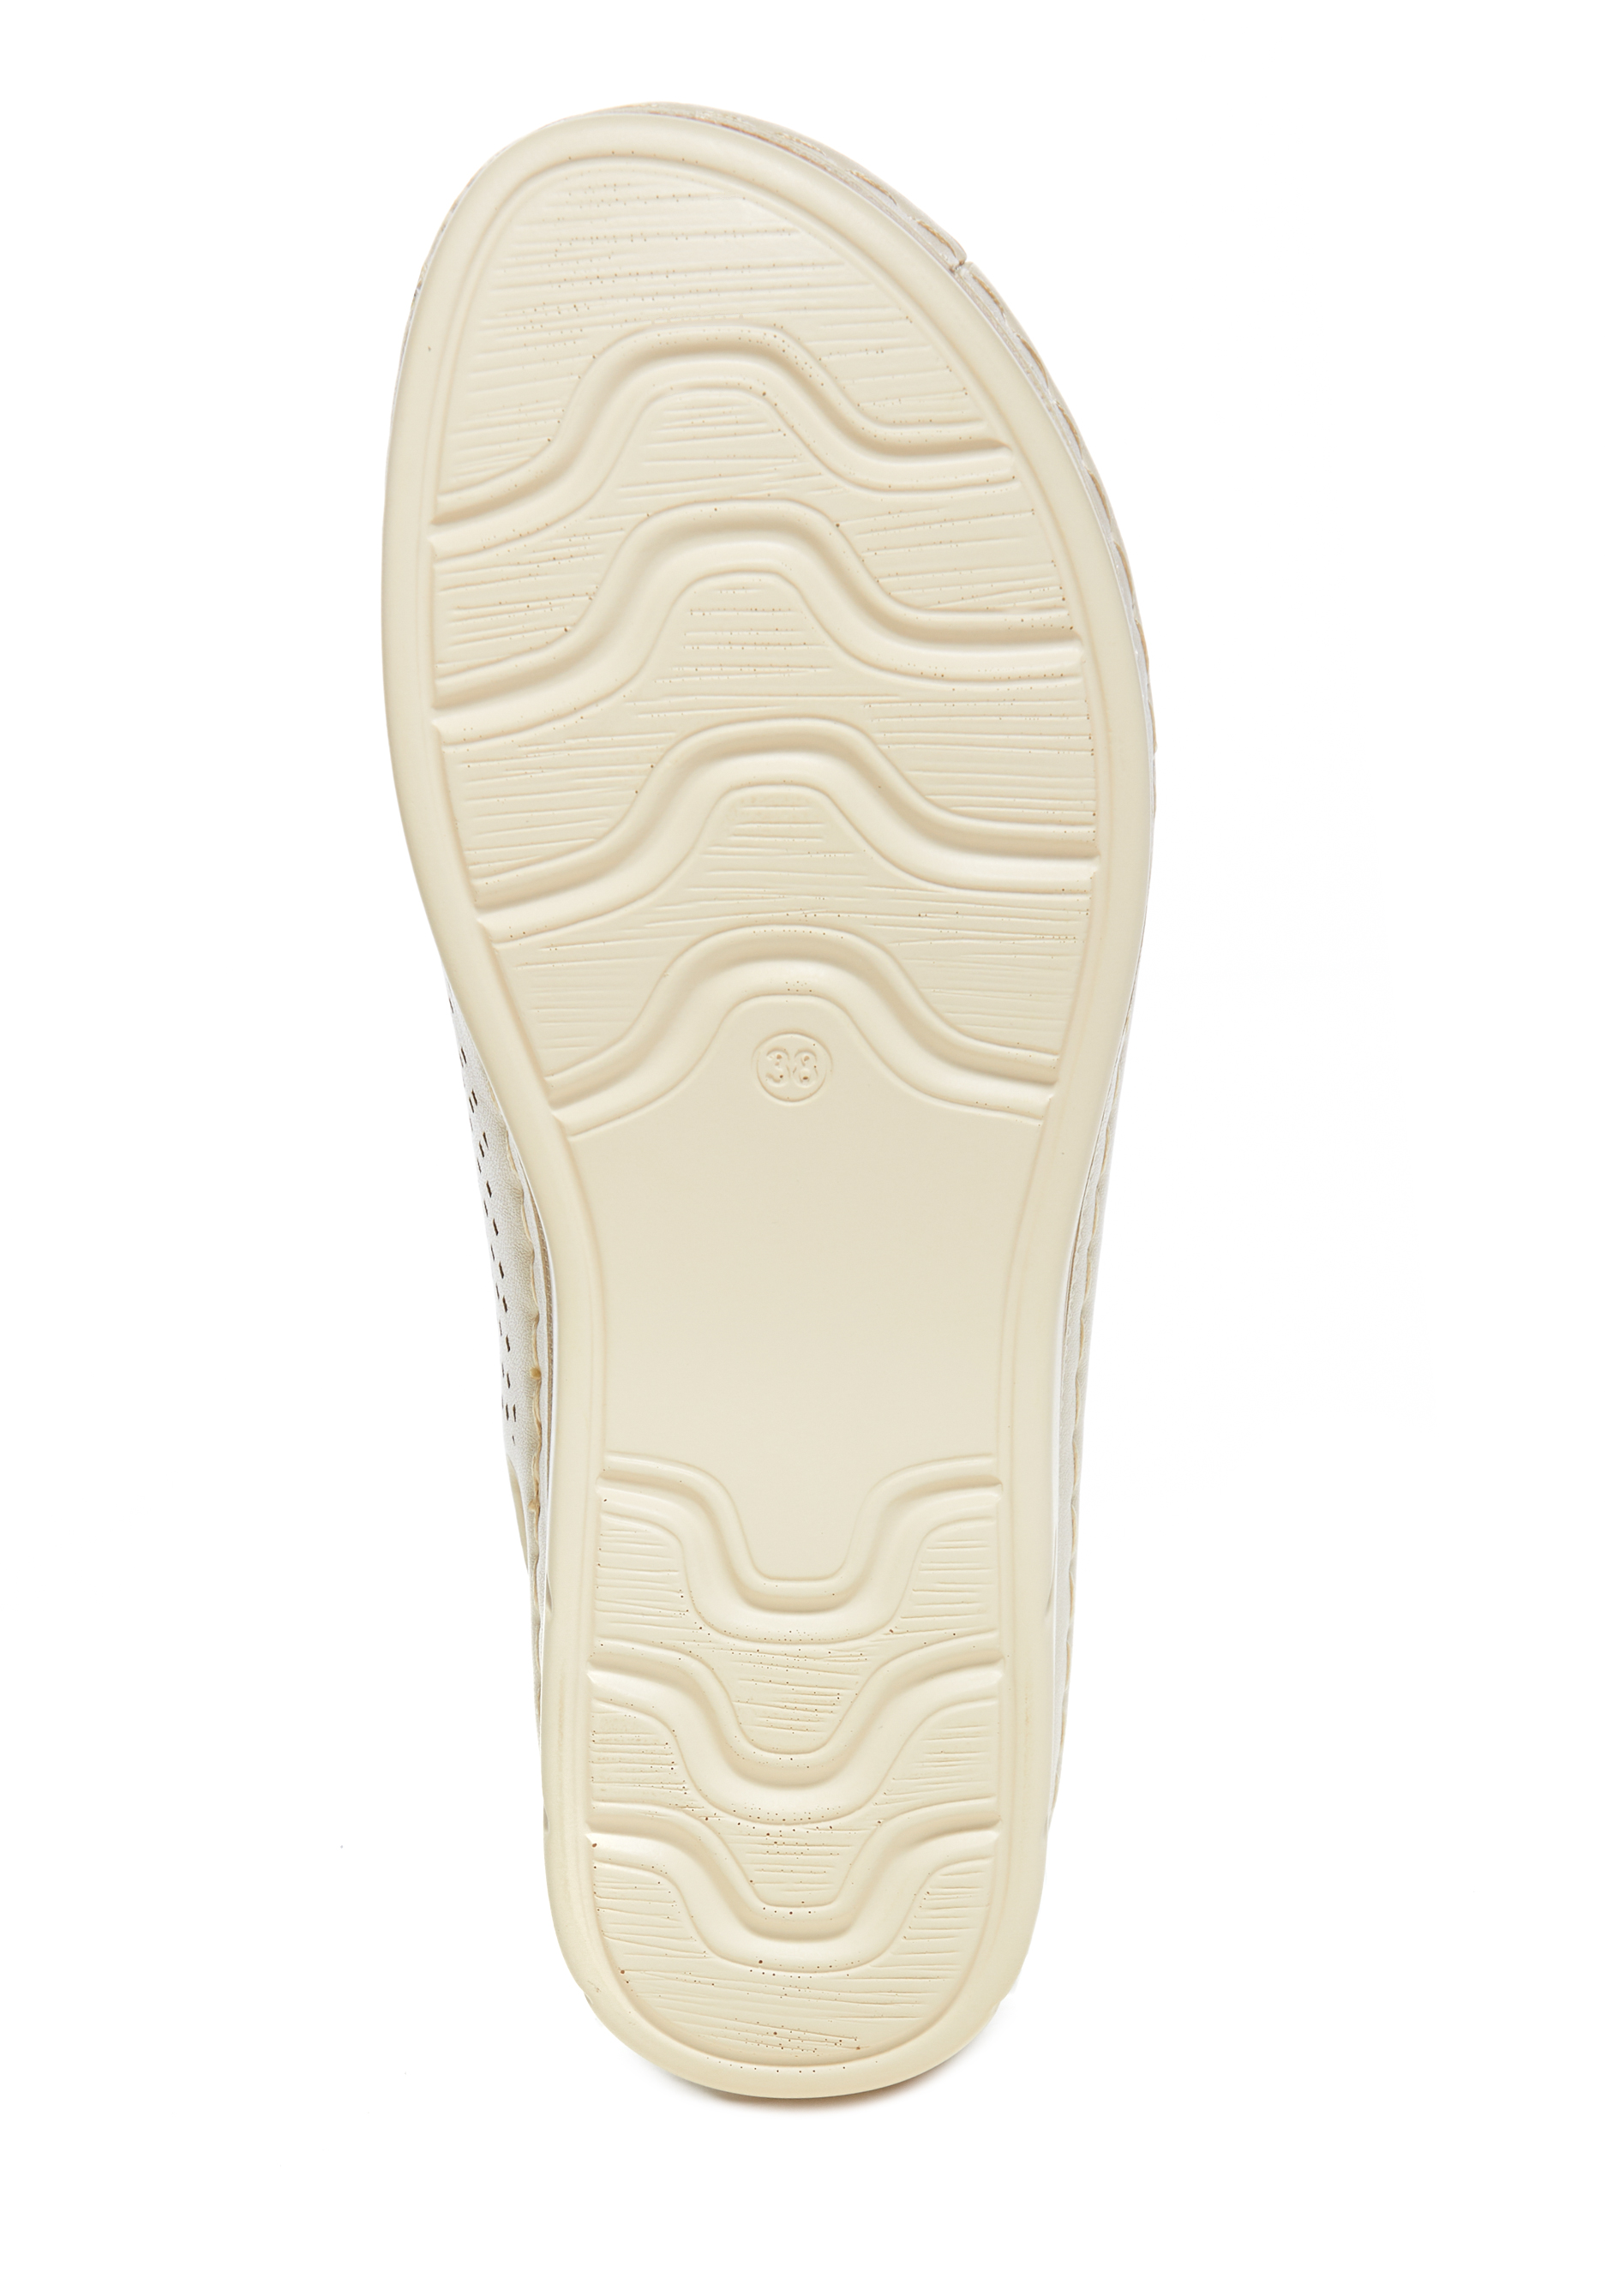 Босоножки женские "Степанида" Evalli, цвет бежевый, размер 40 - фото 5